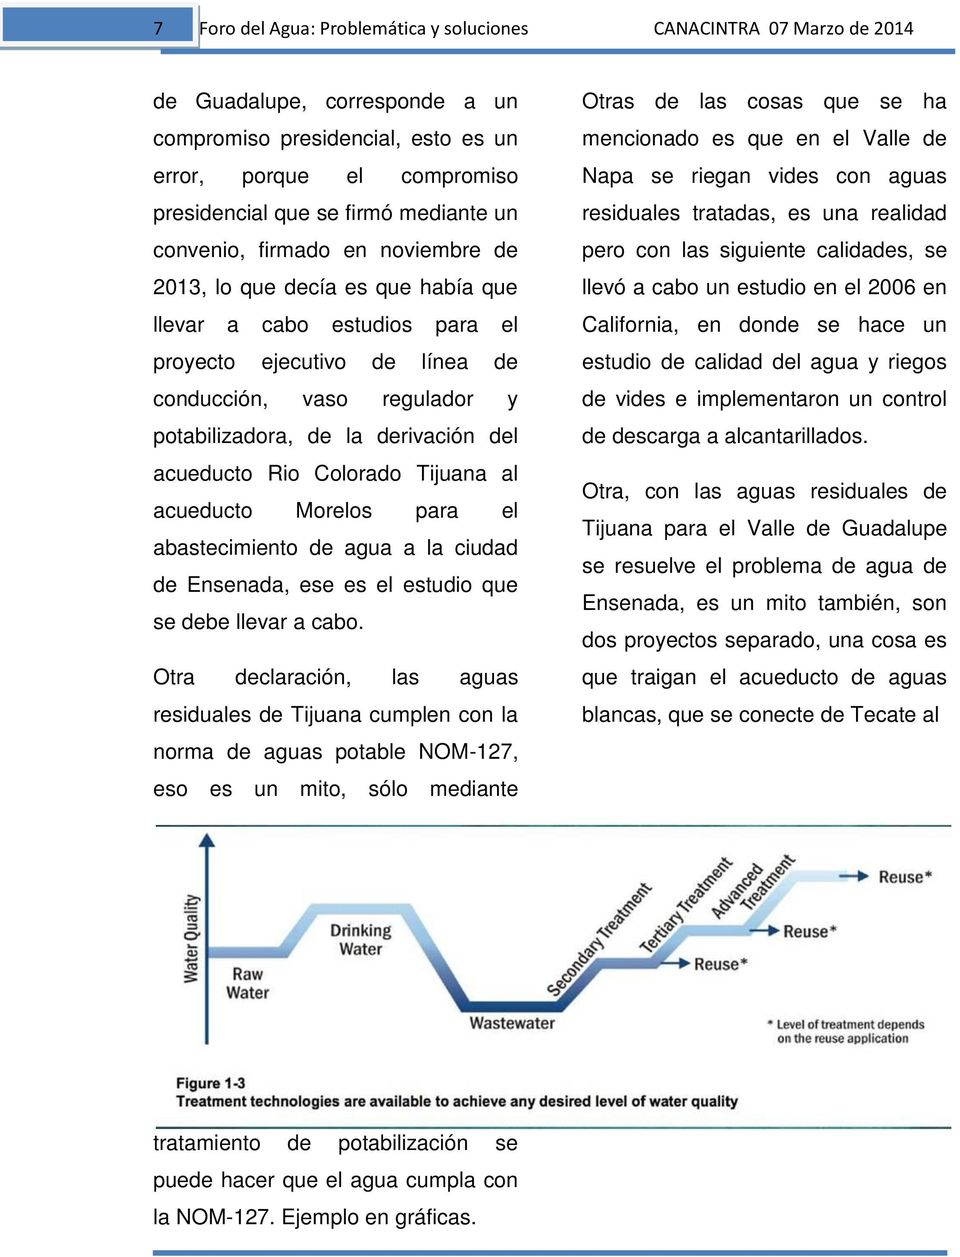 derivación del acueducto Rio Colorado Tijuana al acueducto Morelos para el abastecimiento de agua a la ciudad de Ensenada, ese es el estudio que se debe llevar a cabo.